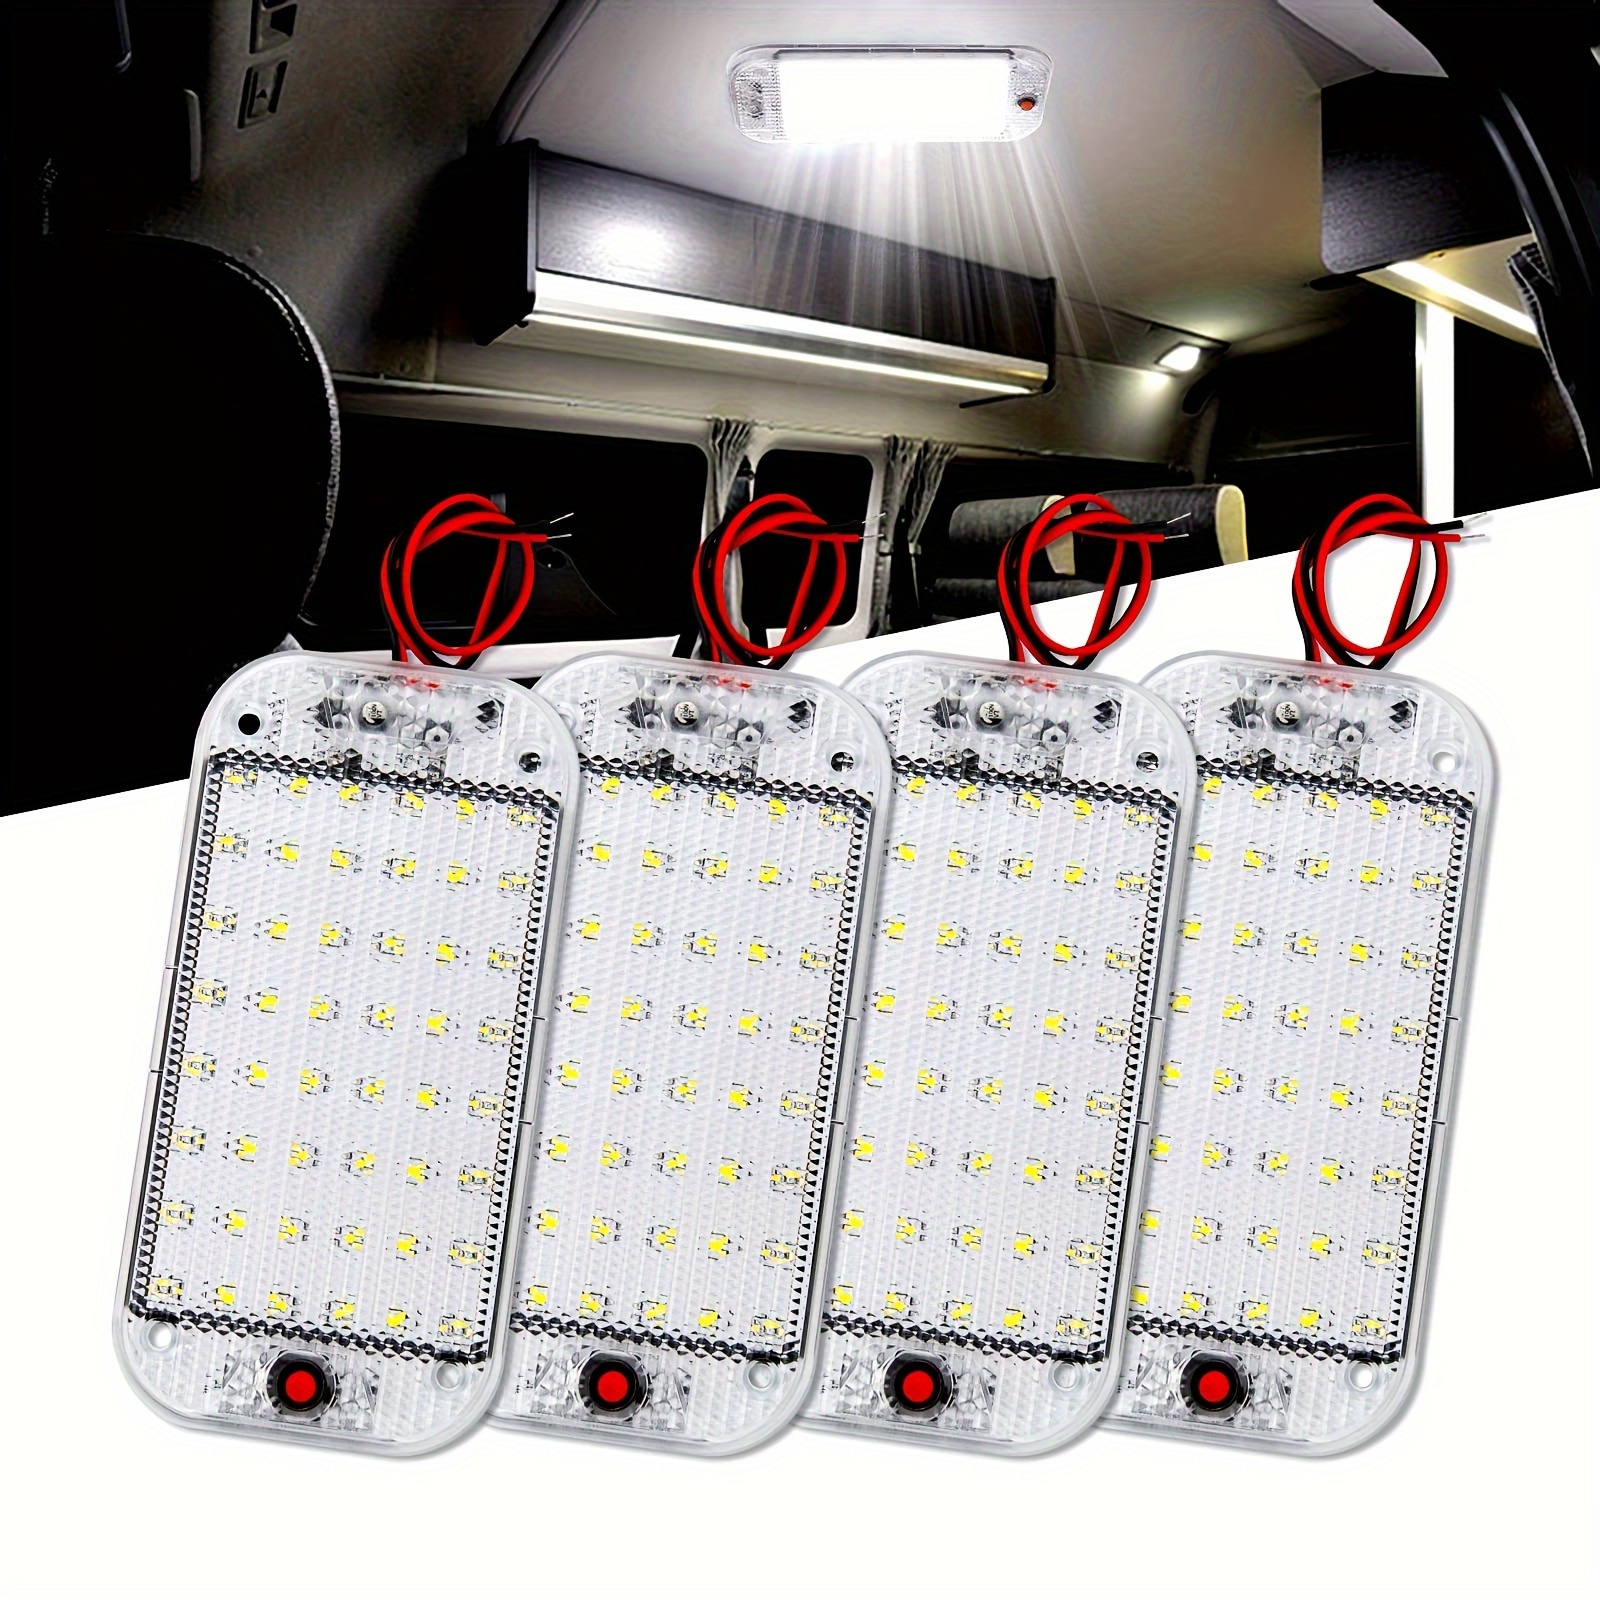 12 V 40 luces LED interiores de furgoneta, lámpara LED blanca impermeable  con lente de proyecto LED para LWB, furgoneta, barcos, caravanas,  remolques